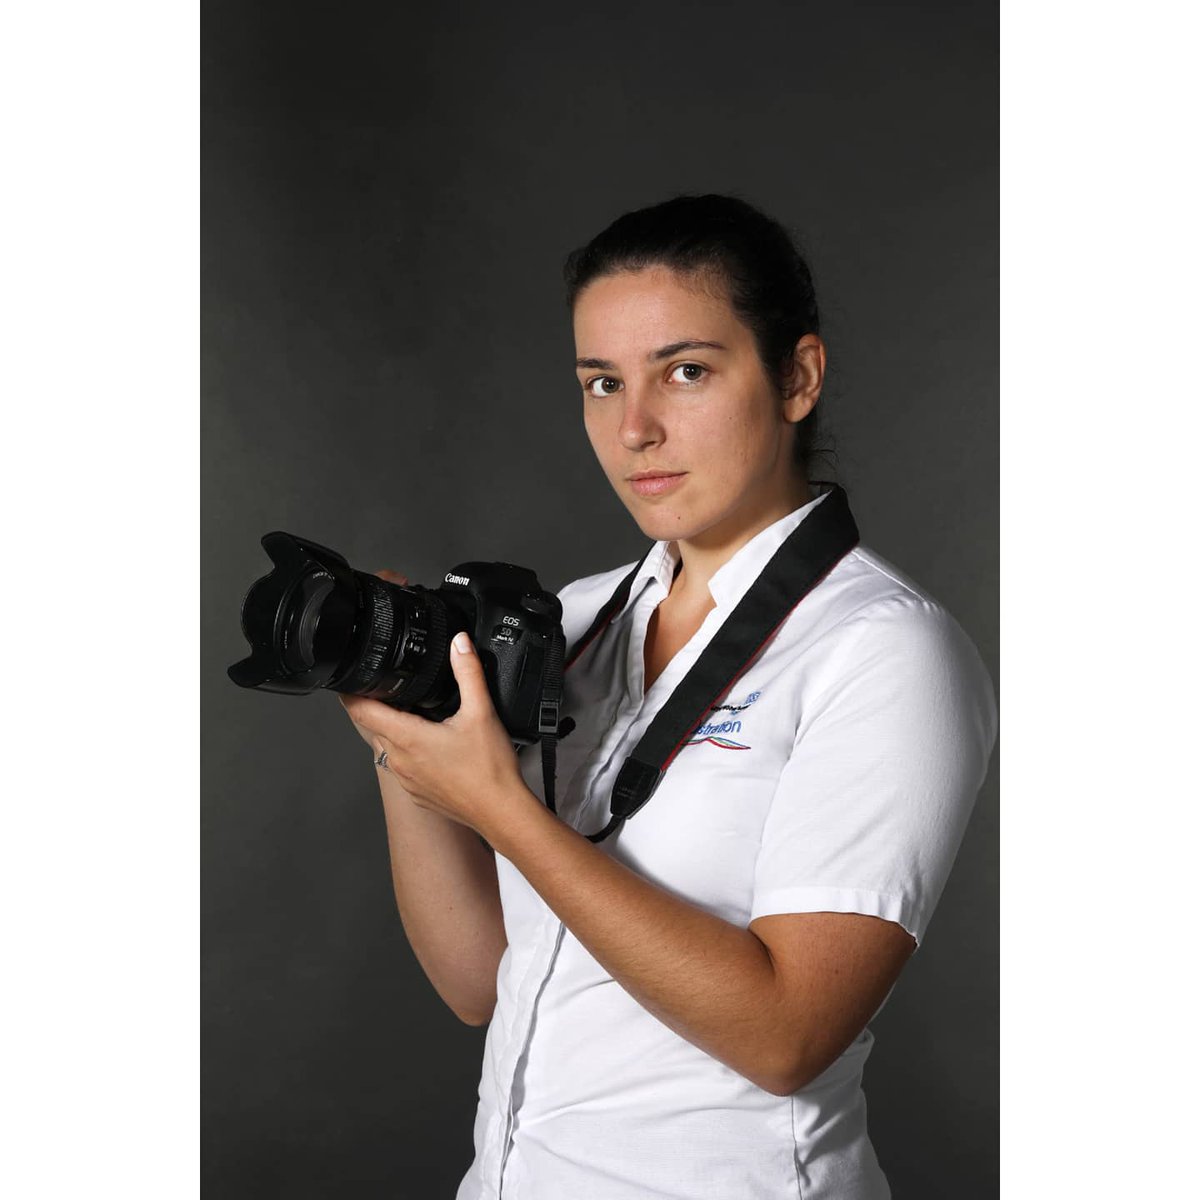 Clinical photographer 📸

#clinicalphotography #clinicalphotographer #newcross #Wolverhampton